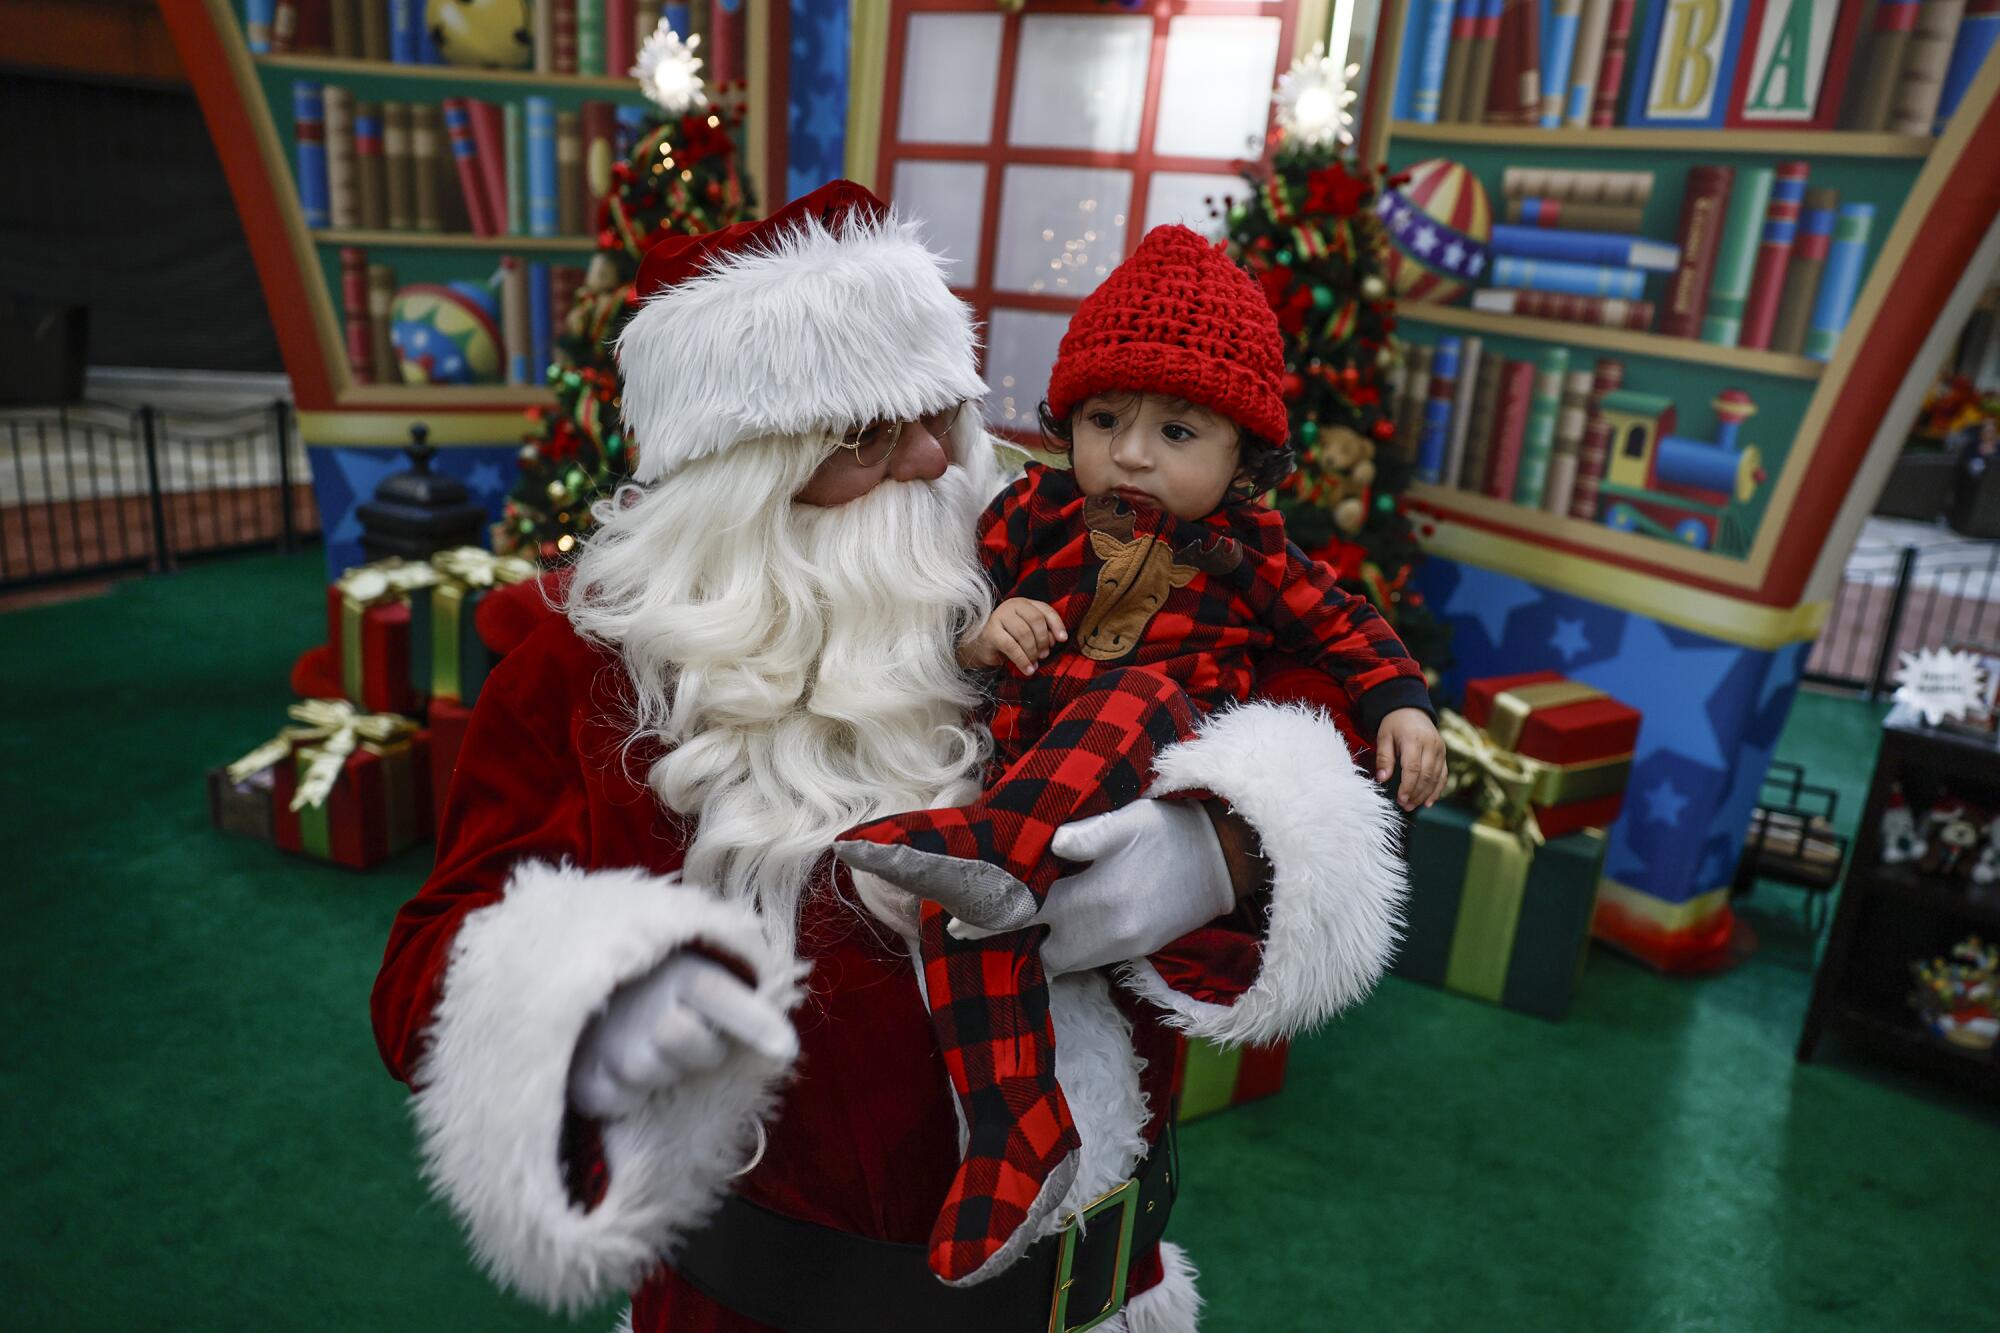 Adan Gonzalez, 11 months, is held by Santa.